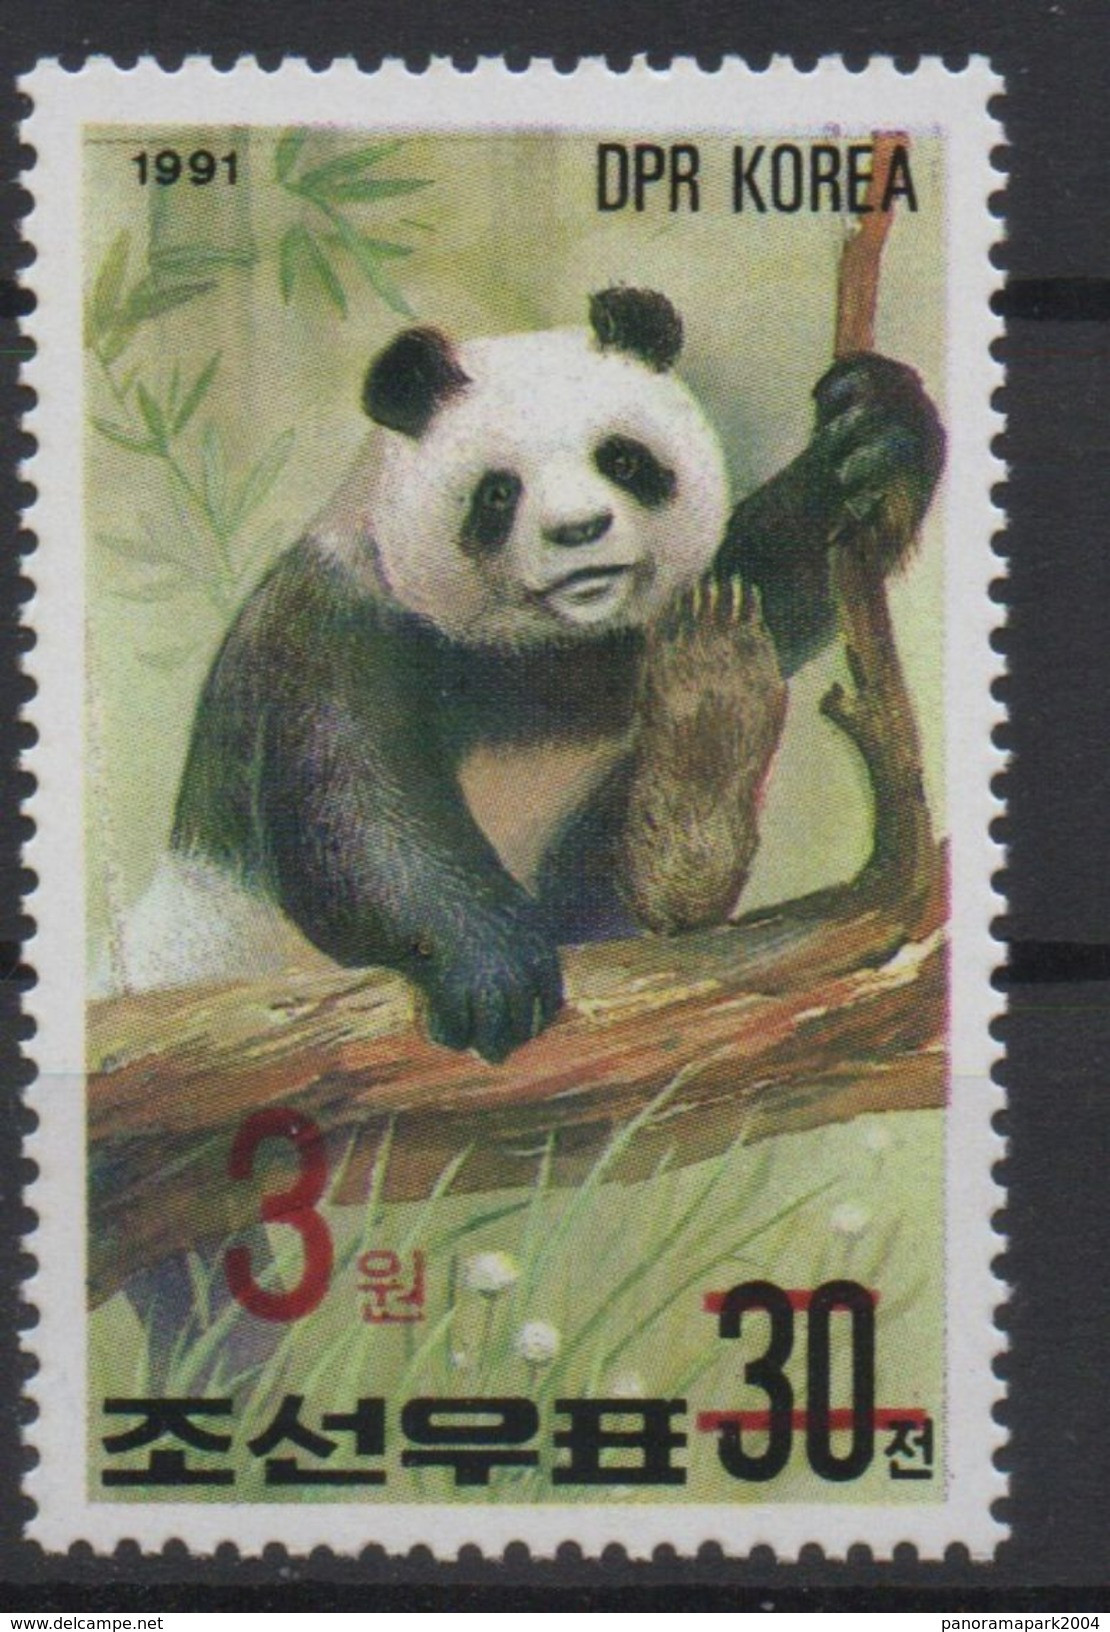 North Korea Corée Du Nord 2006 Mi. 5051 Surchargé Rouge RED OVERPRINT Faune Fauna Ours Bear Bär Panda MNH** RARE - Orsi